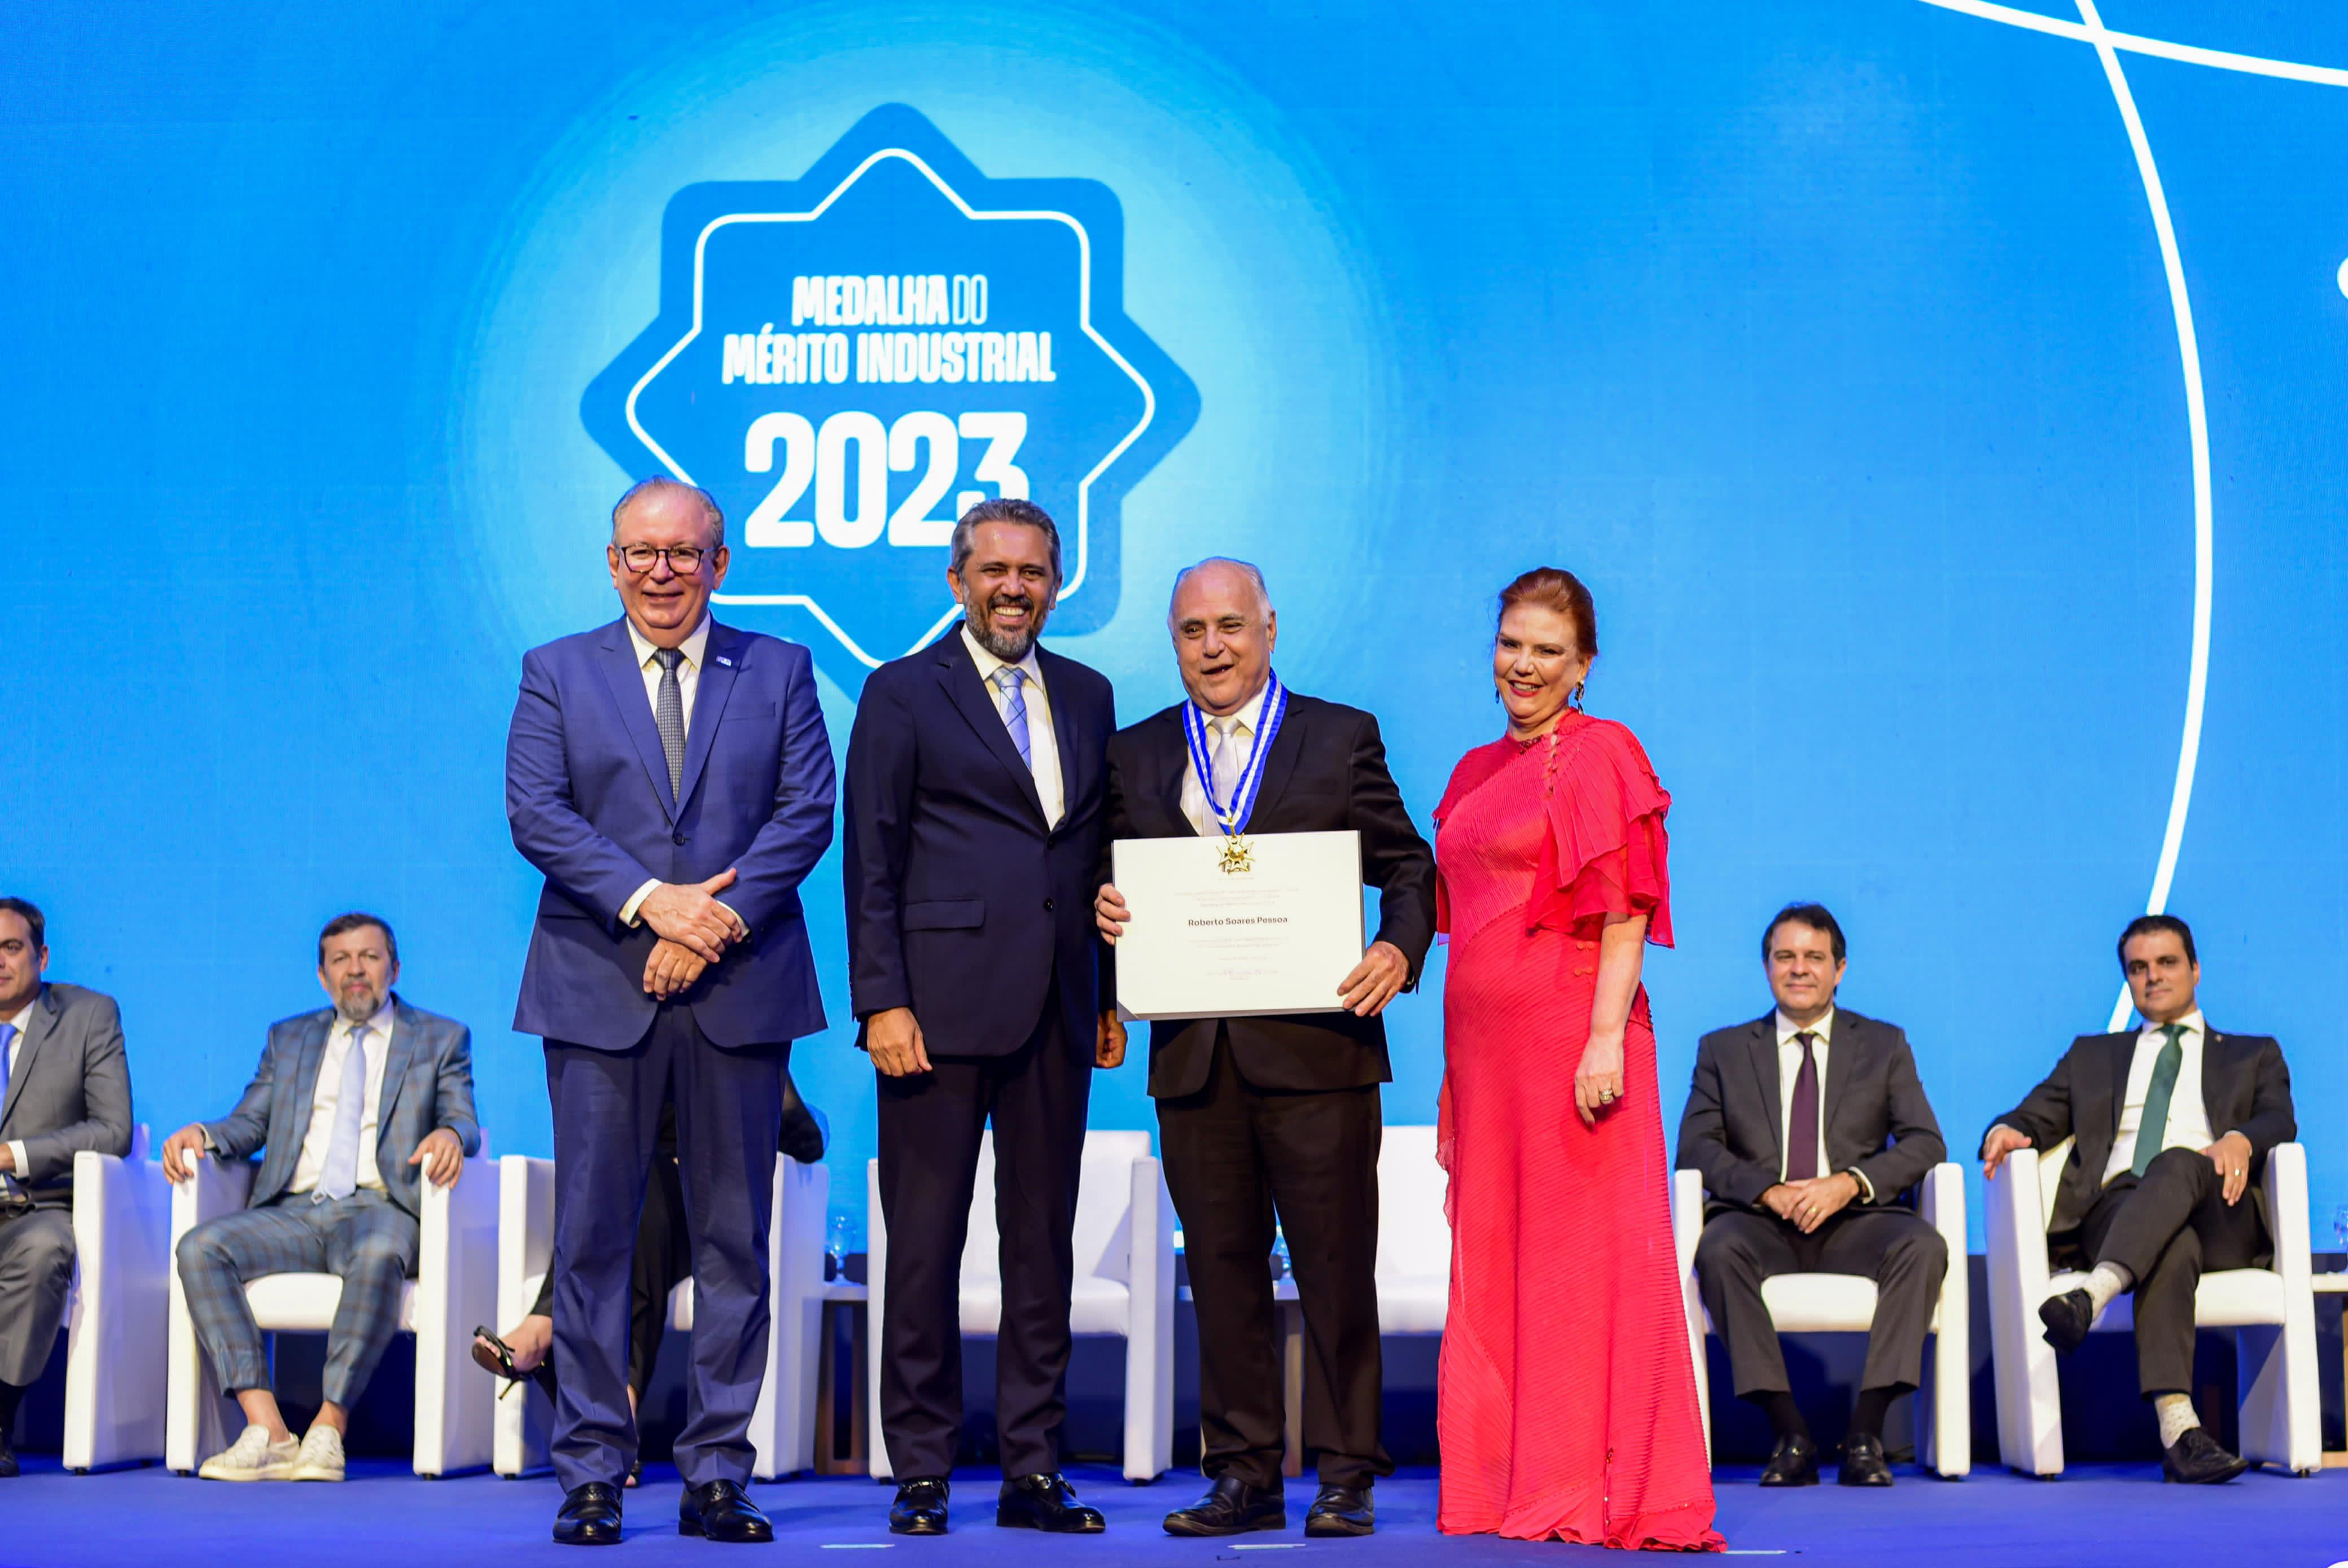 Roberto Pessoa recebe a Medalha do Mérito Industrial da FIEC em reconhecimento à sua contribuição para a indústria cearense